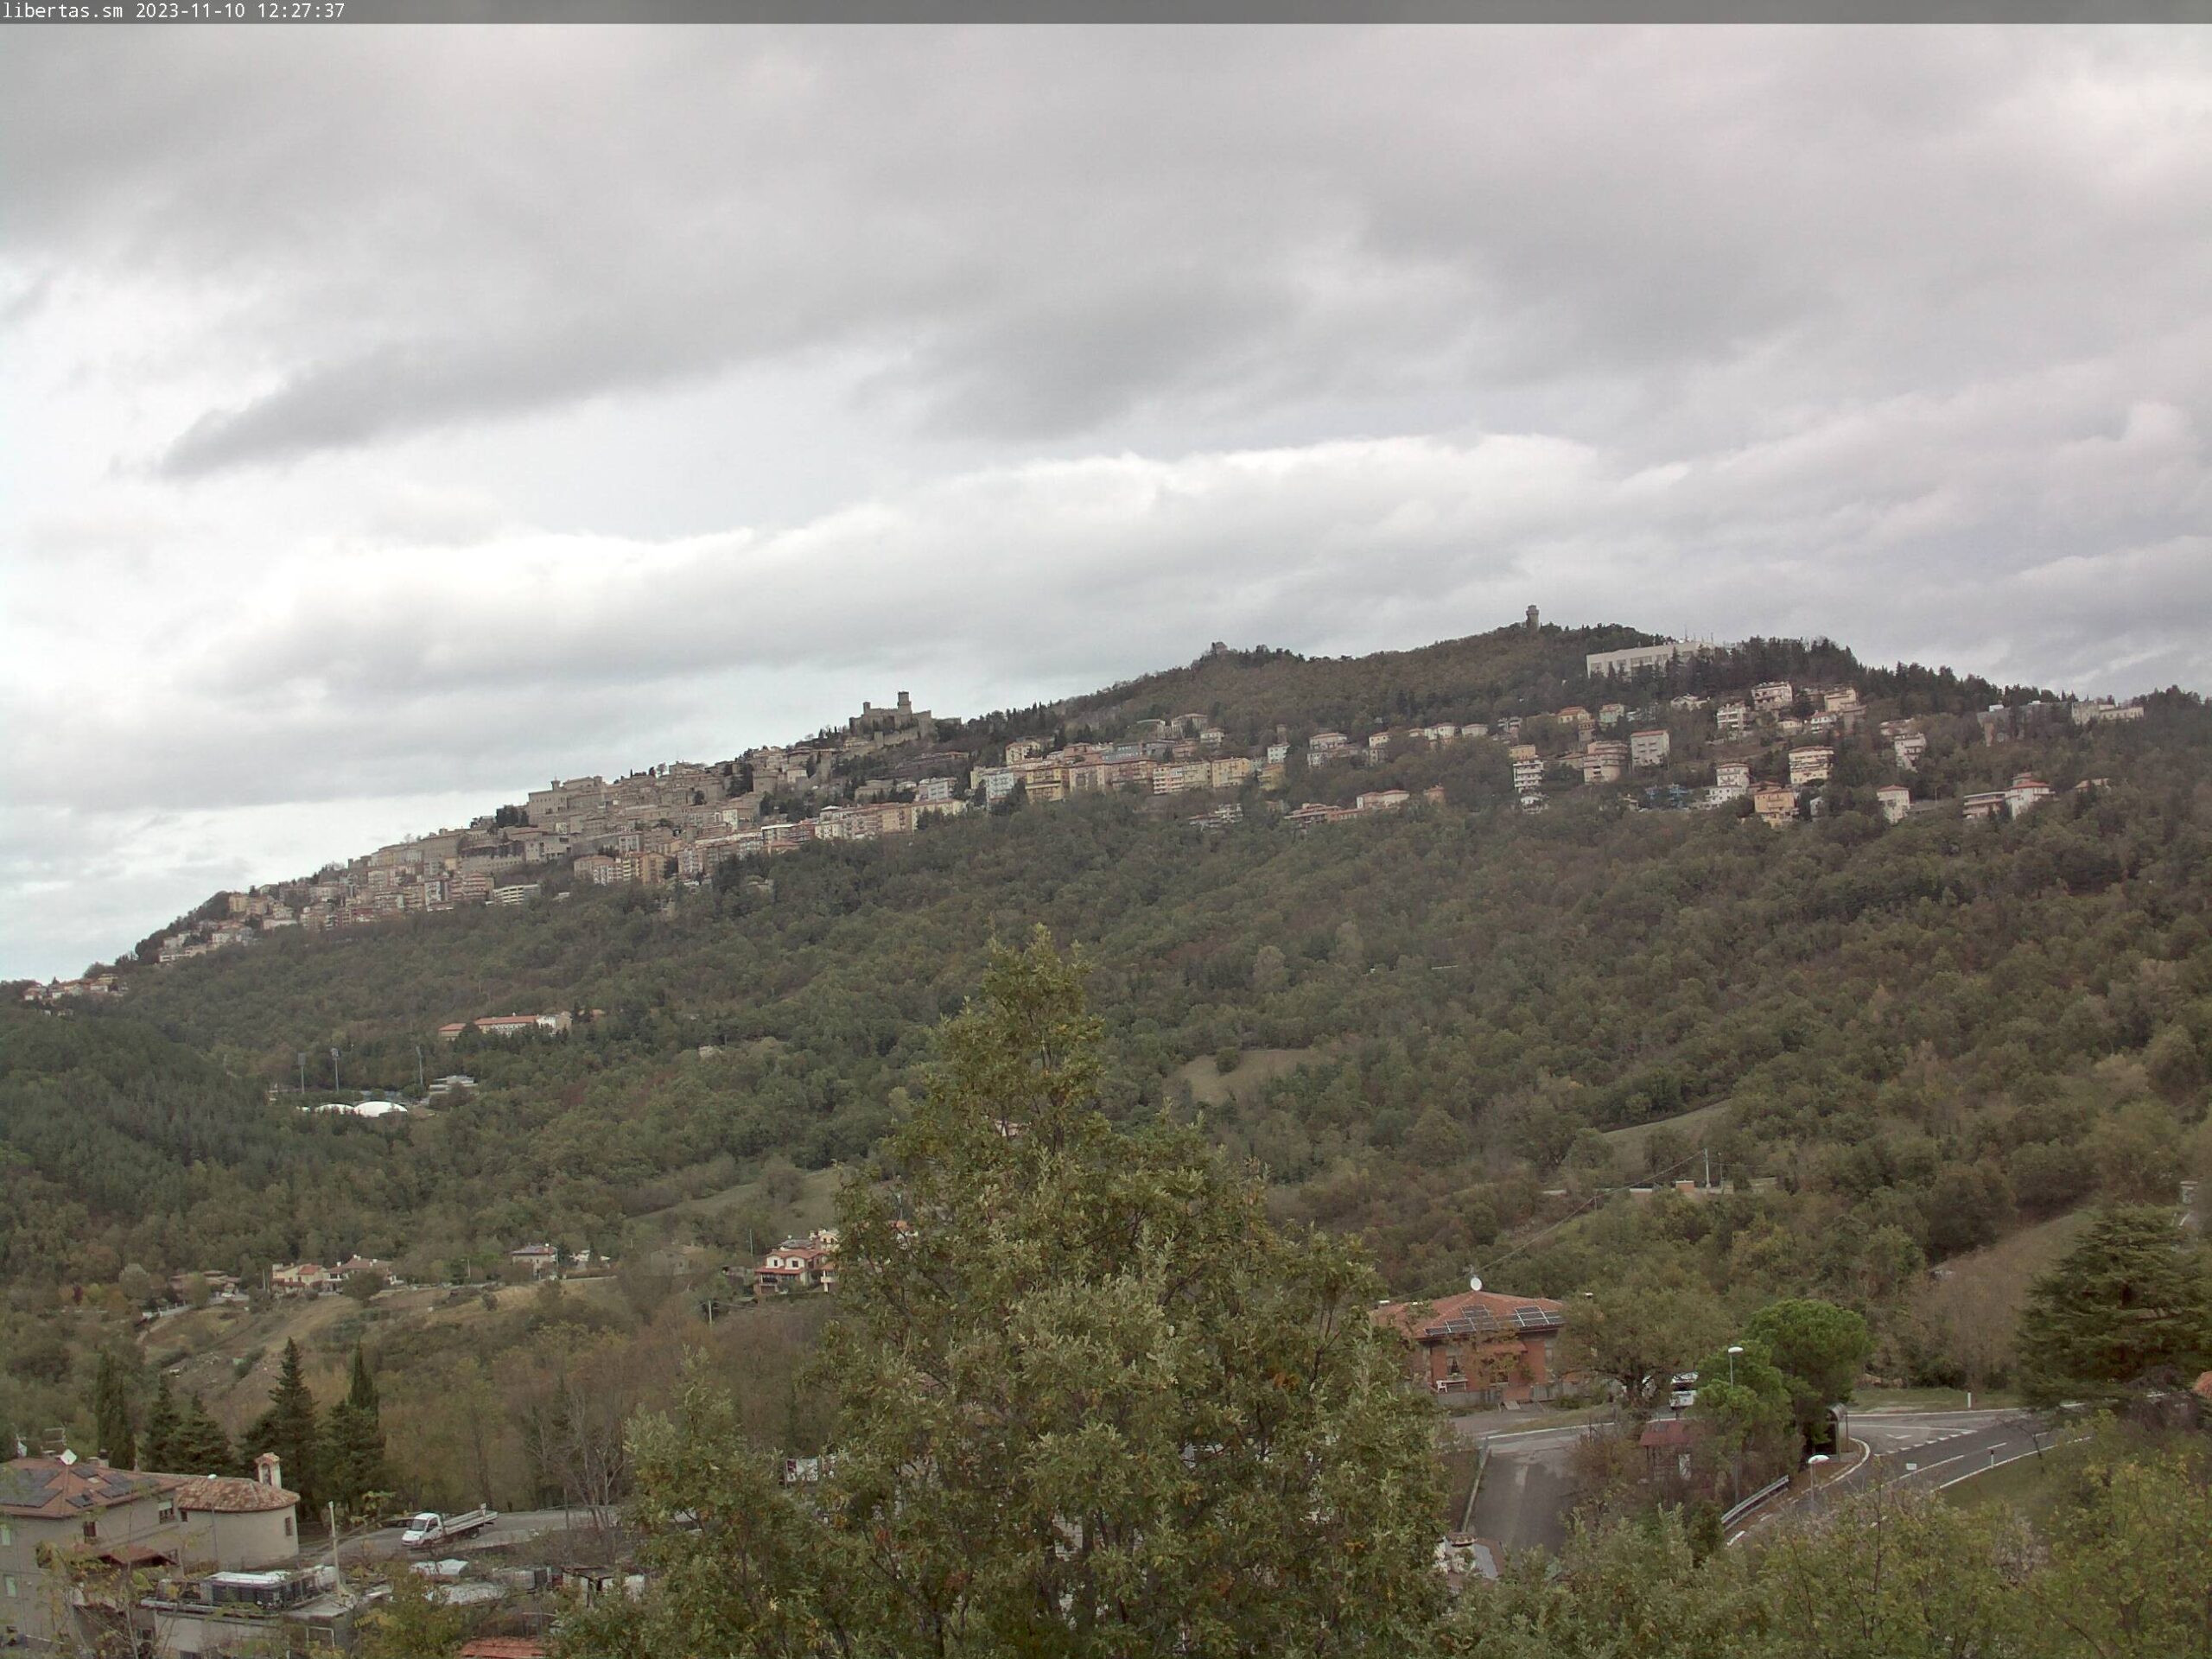 San Marino. Meteo: Sabato col sole, Domenica di nuvole. Bel tempo nella prima parte della settimana. Tra giovedi 16 e venerdì 17 torna il maltempo e più freddo